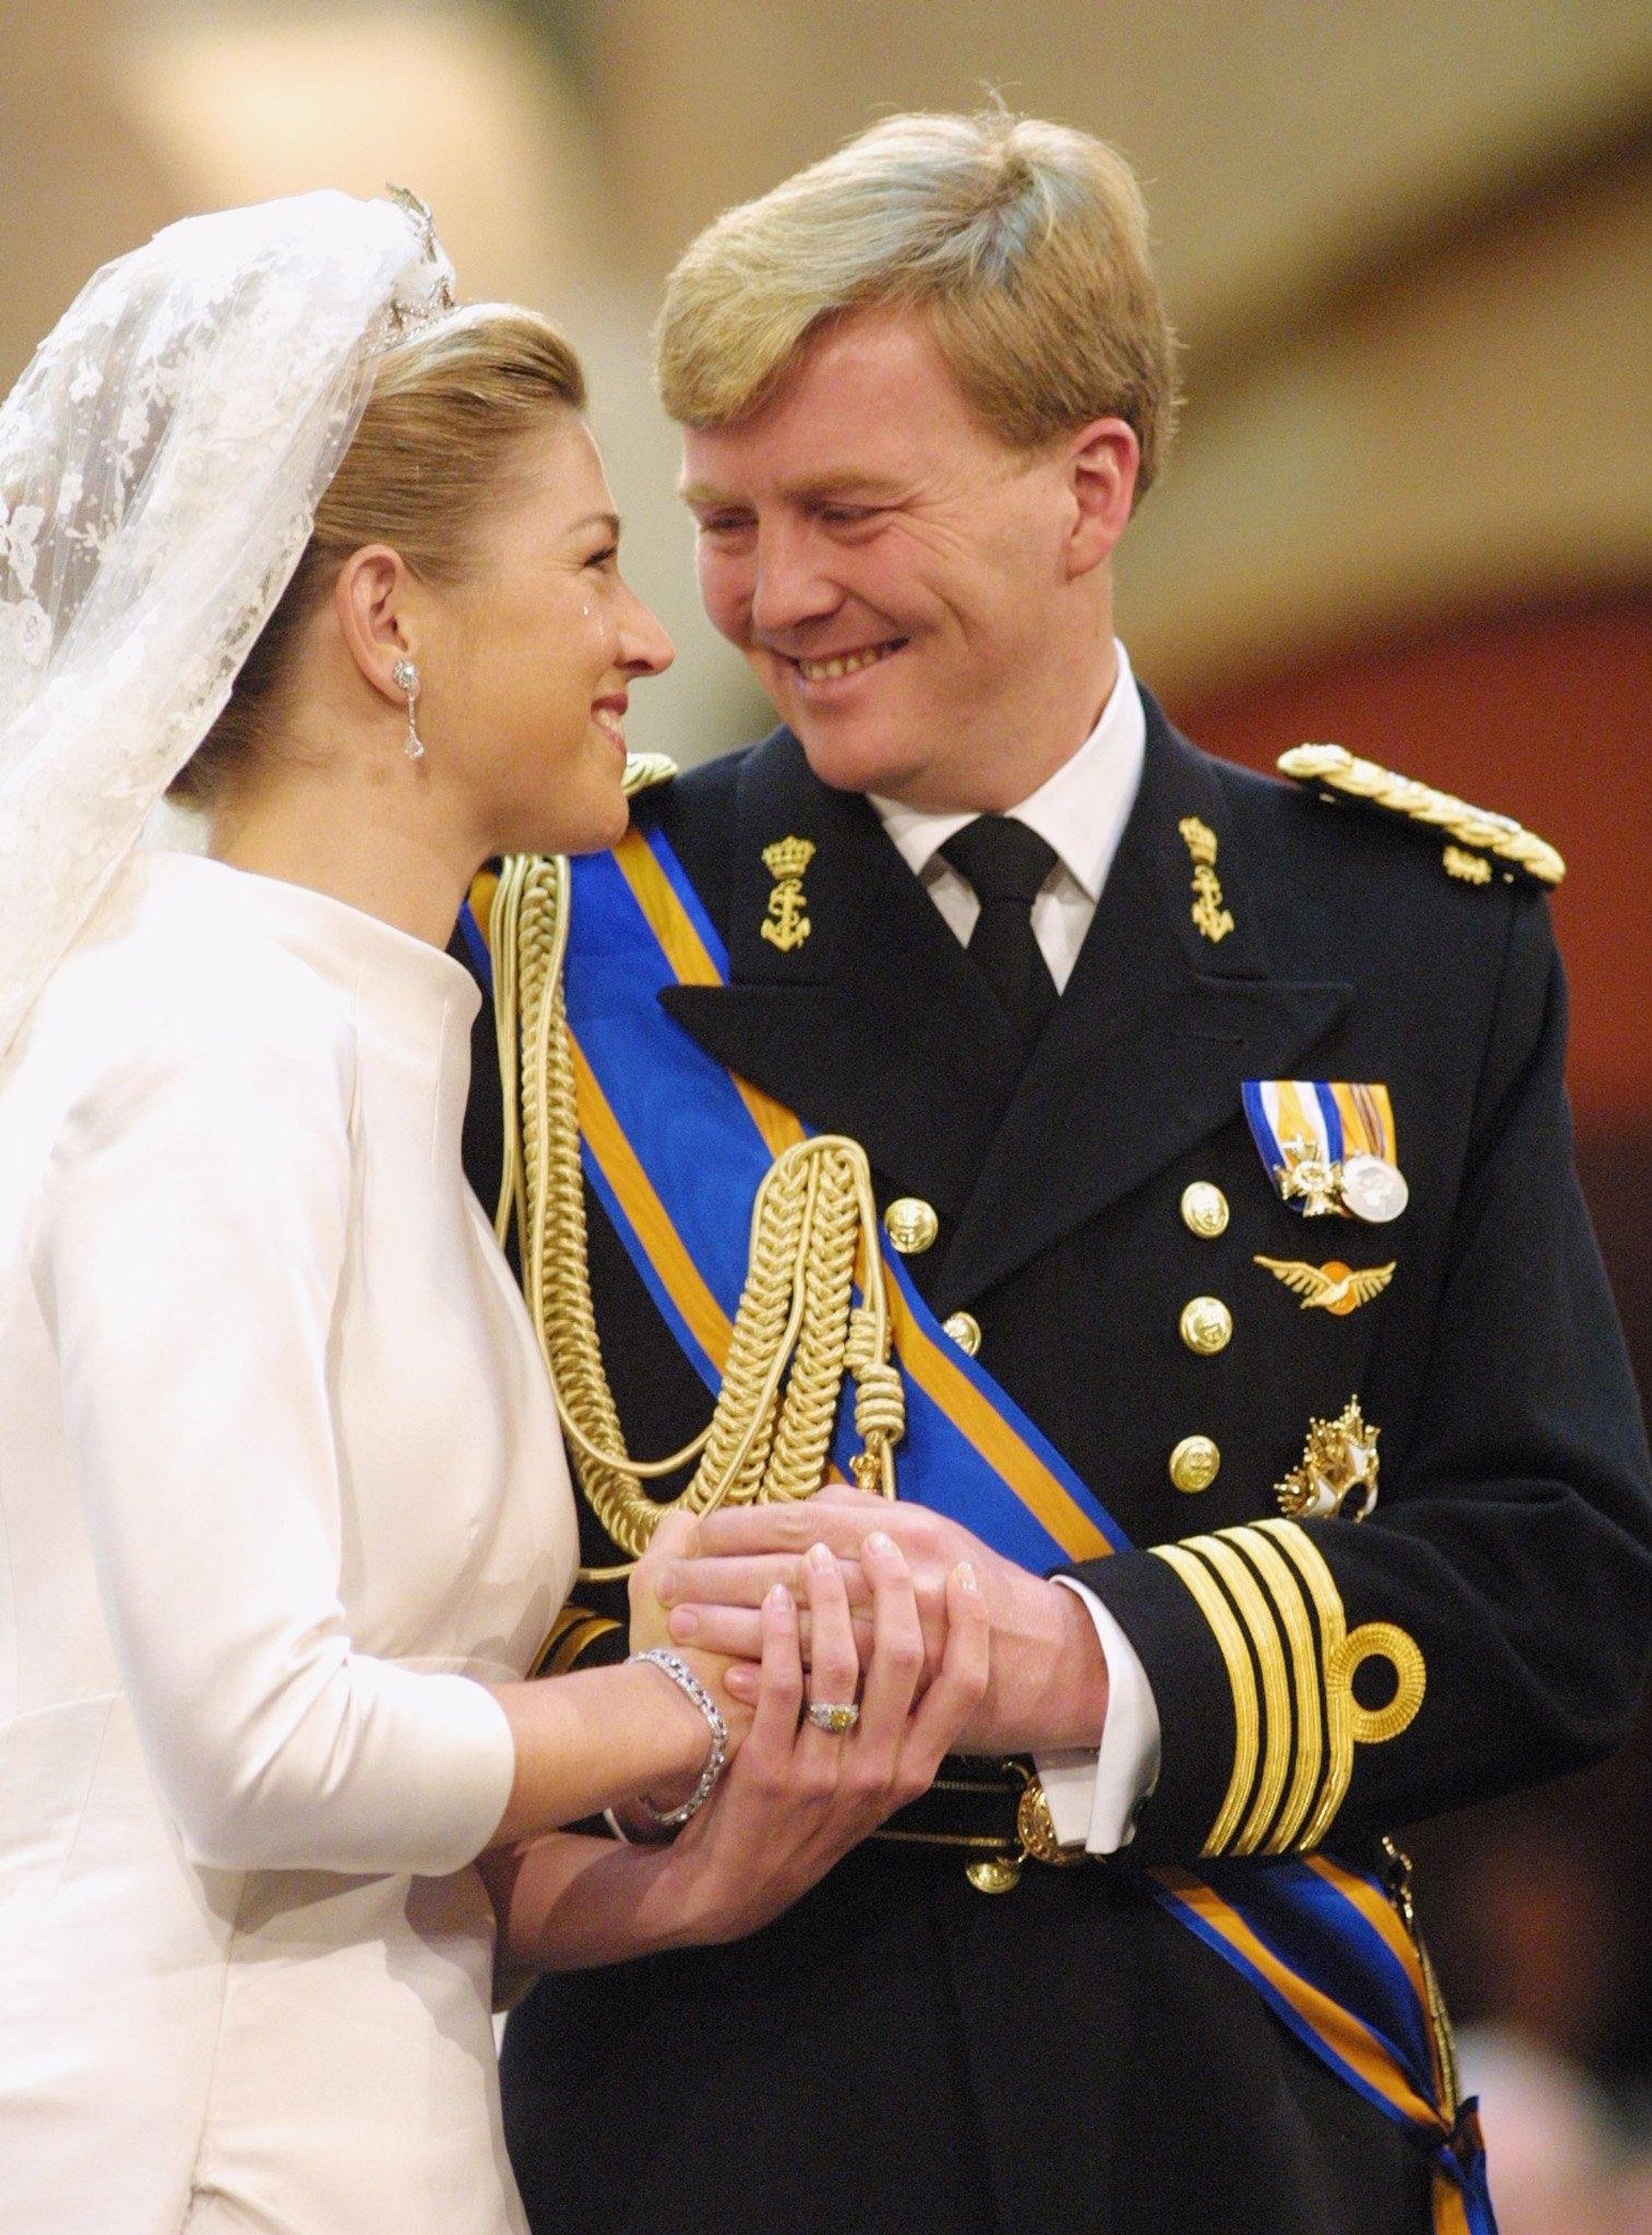 Getrouwd! Kroonprins Willem-Alexander en zijn verloofde Máxima geven elkaar het ja-woord in de Beurs